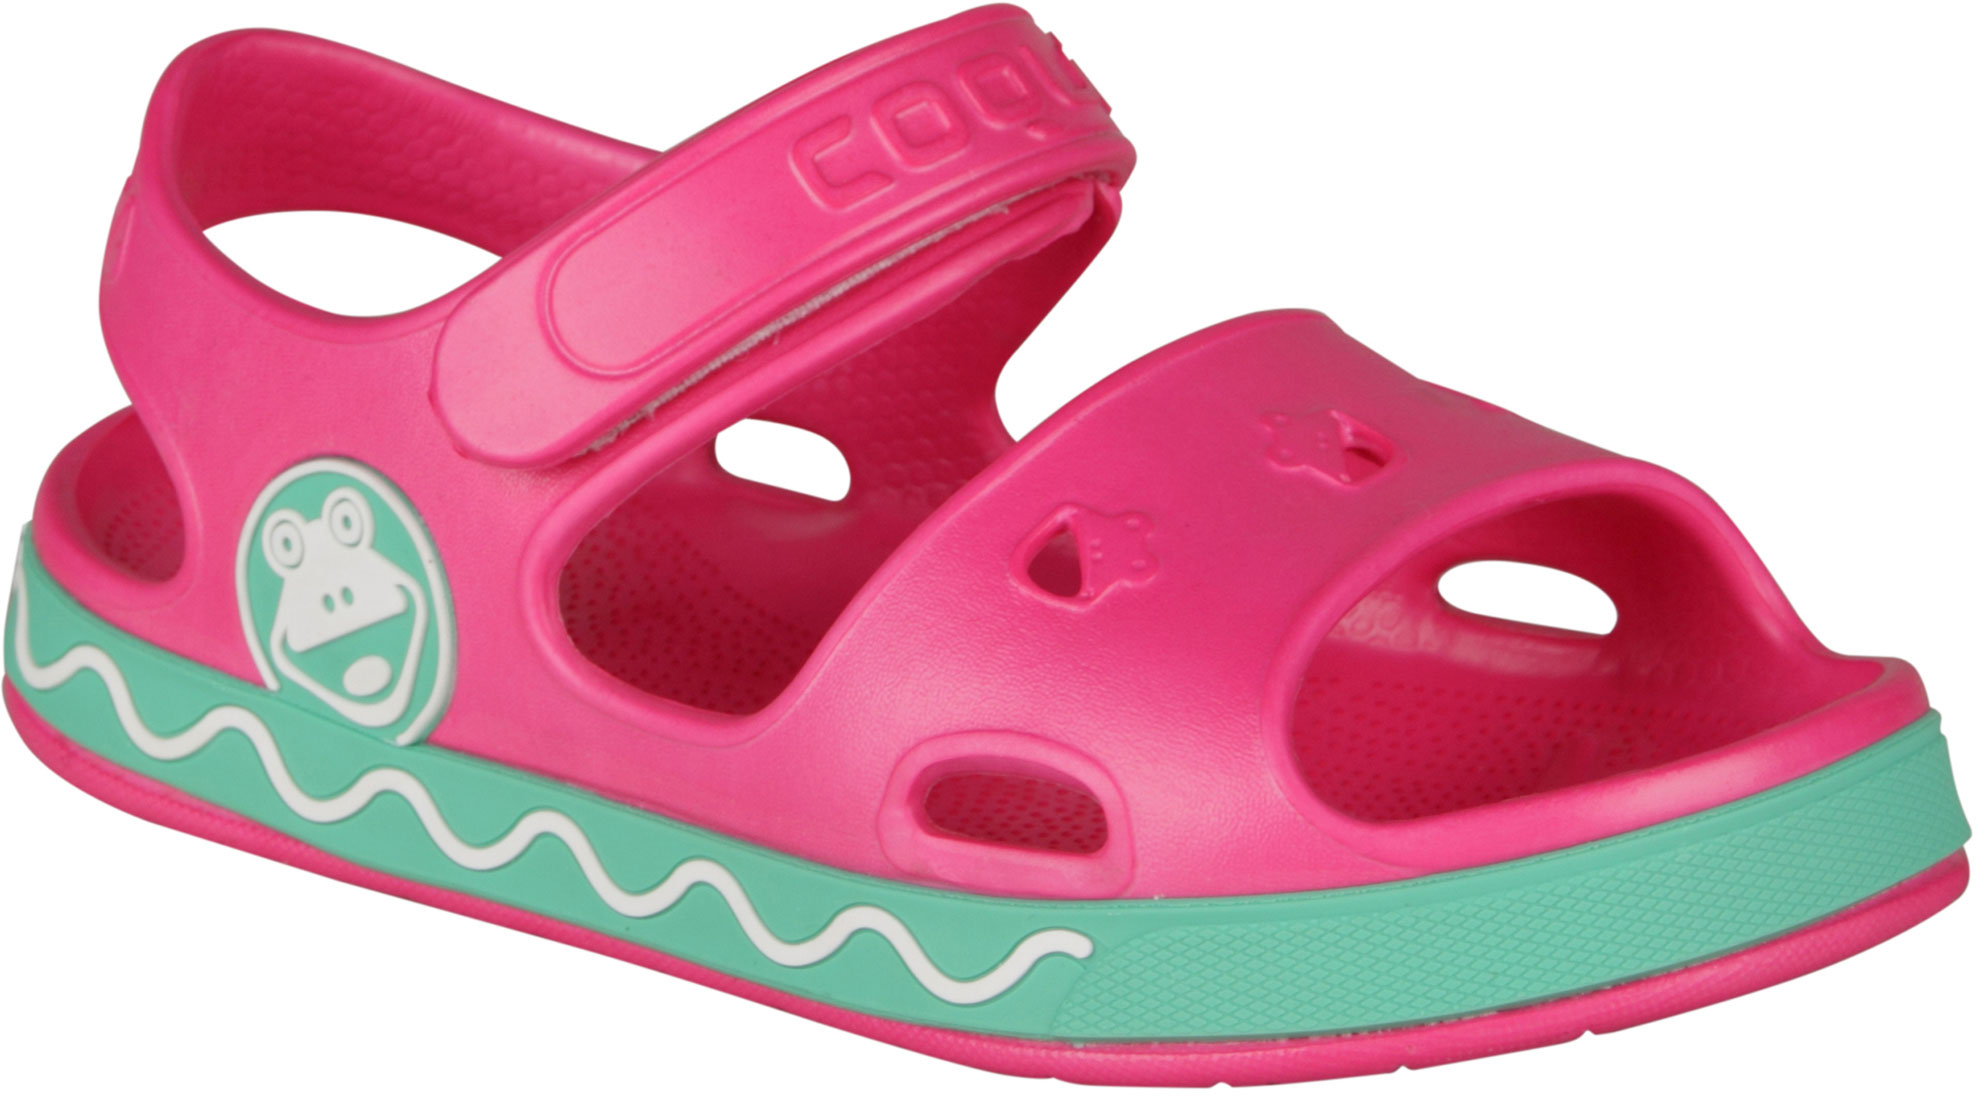 Children's sandals